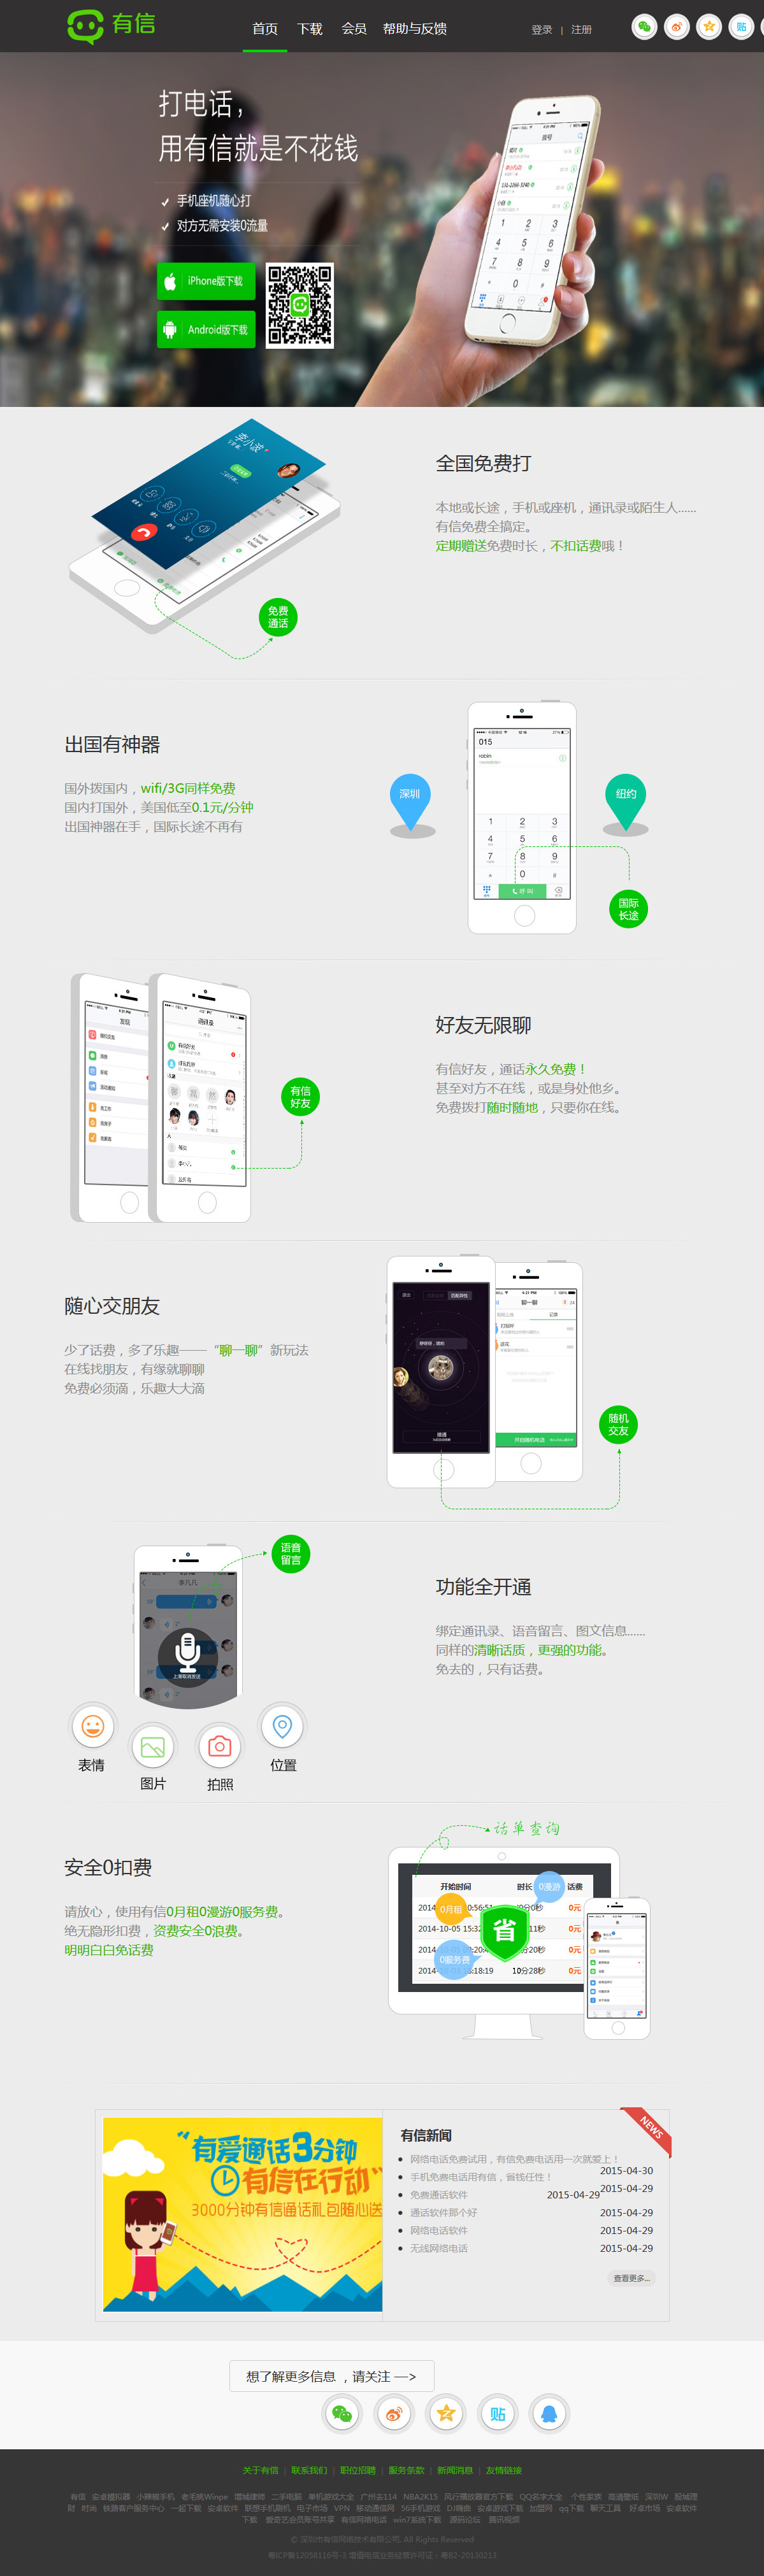 深圳市有信网络技术有限公司案例图片